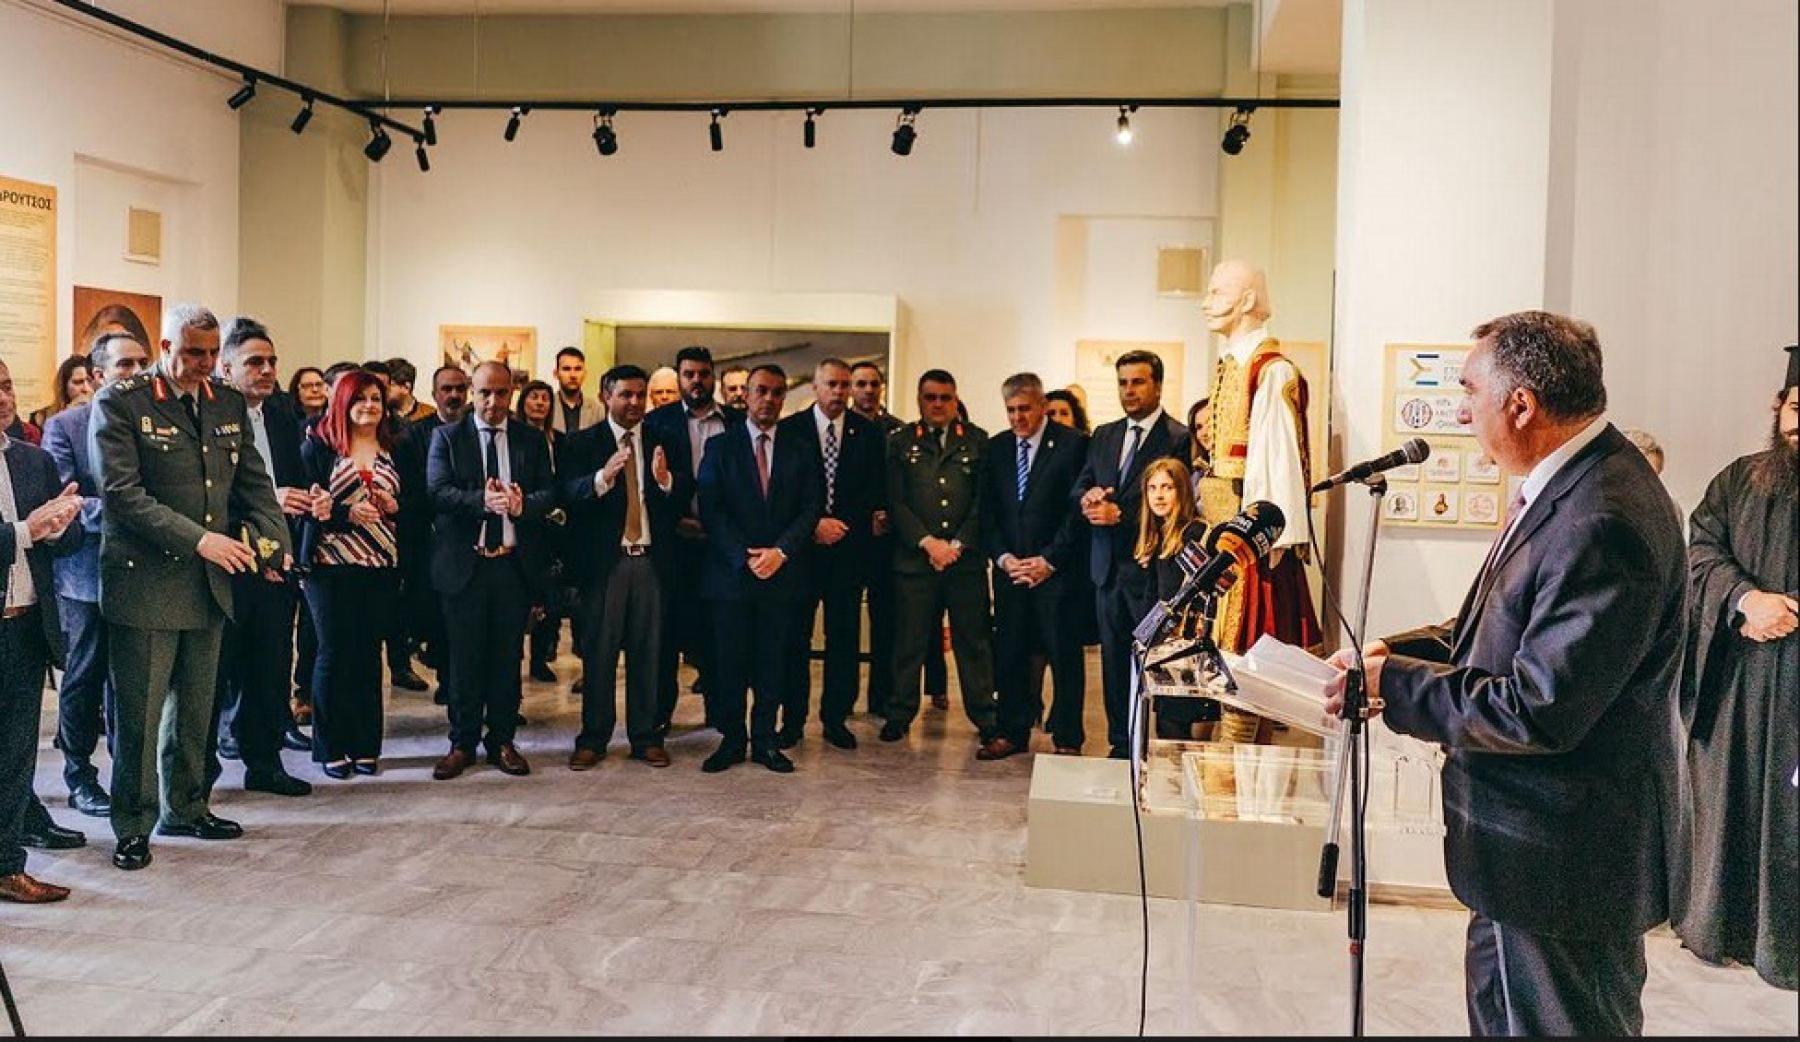 Το νέο Μουσείο Σύγχρονης Ελληνικής Ιστορίας στη Λαμία